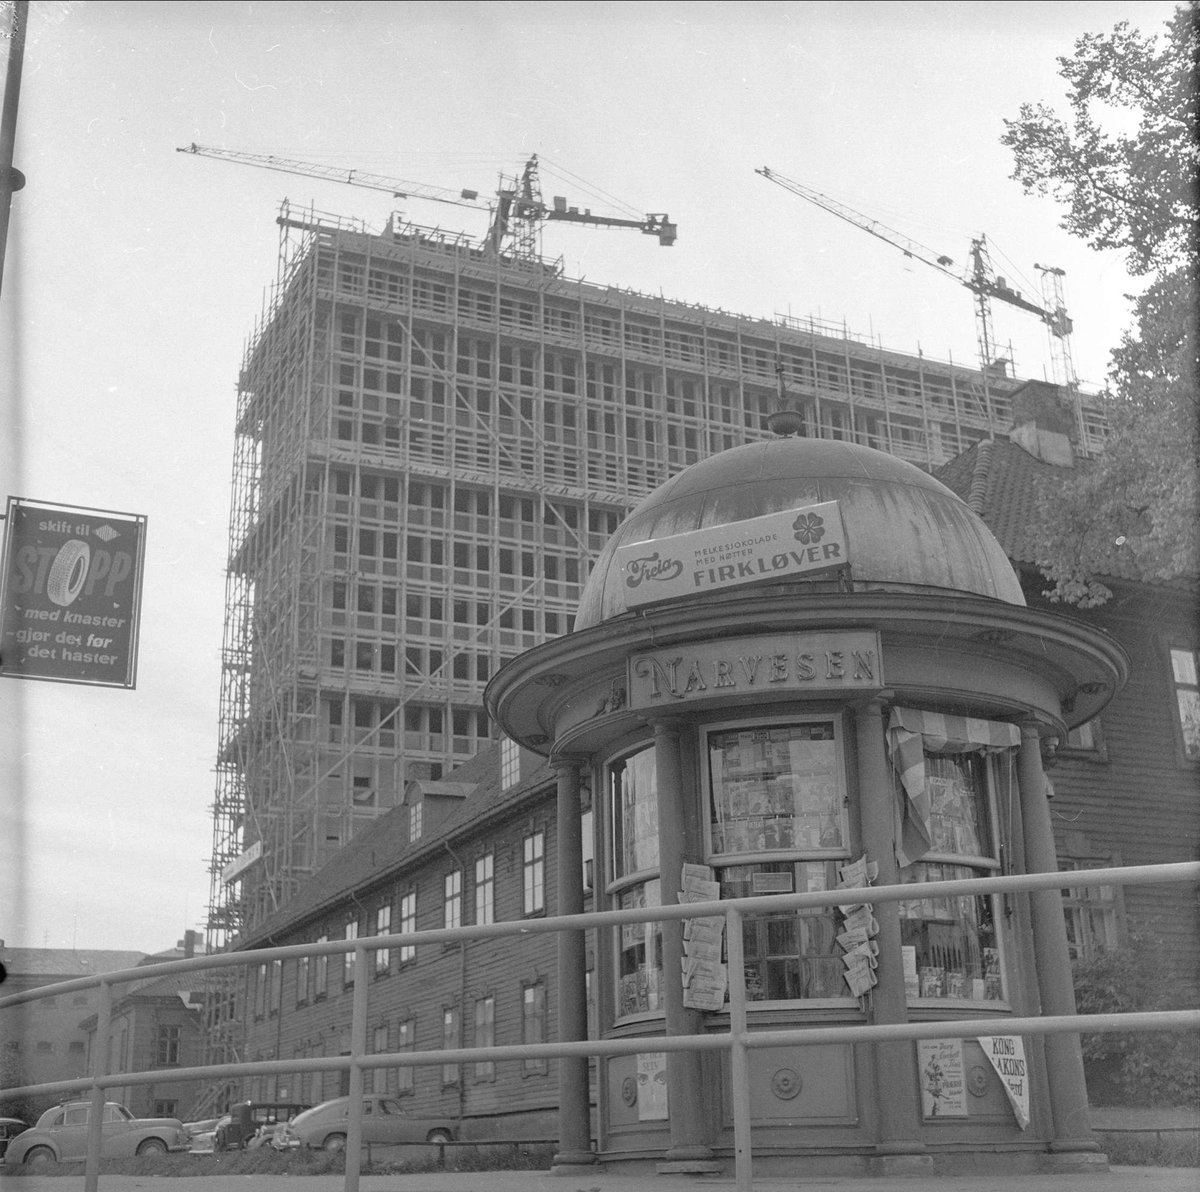 Regjeringsbygget i Rgjeringskvartalet under oppføring. Bygningen i forgrunnen, bak kiosken, er det tidligere Militærhospitalet som ble tatt ned i 1962 og gjenreist påp Grev Wedels plass 1 i 1983.
Akersgata, Oslo, 05.10.1957.